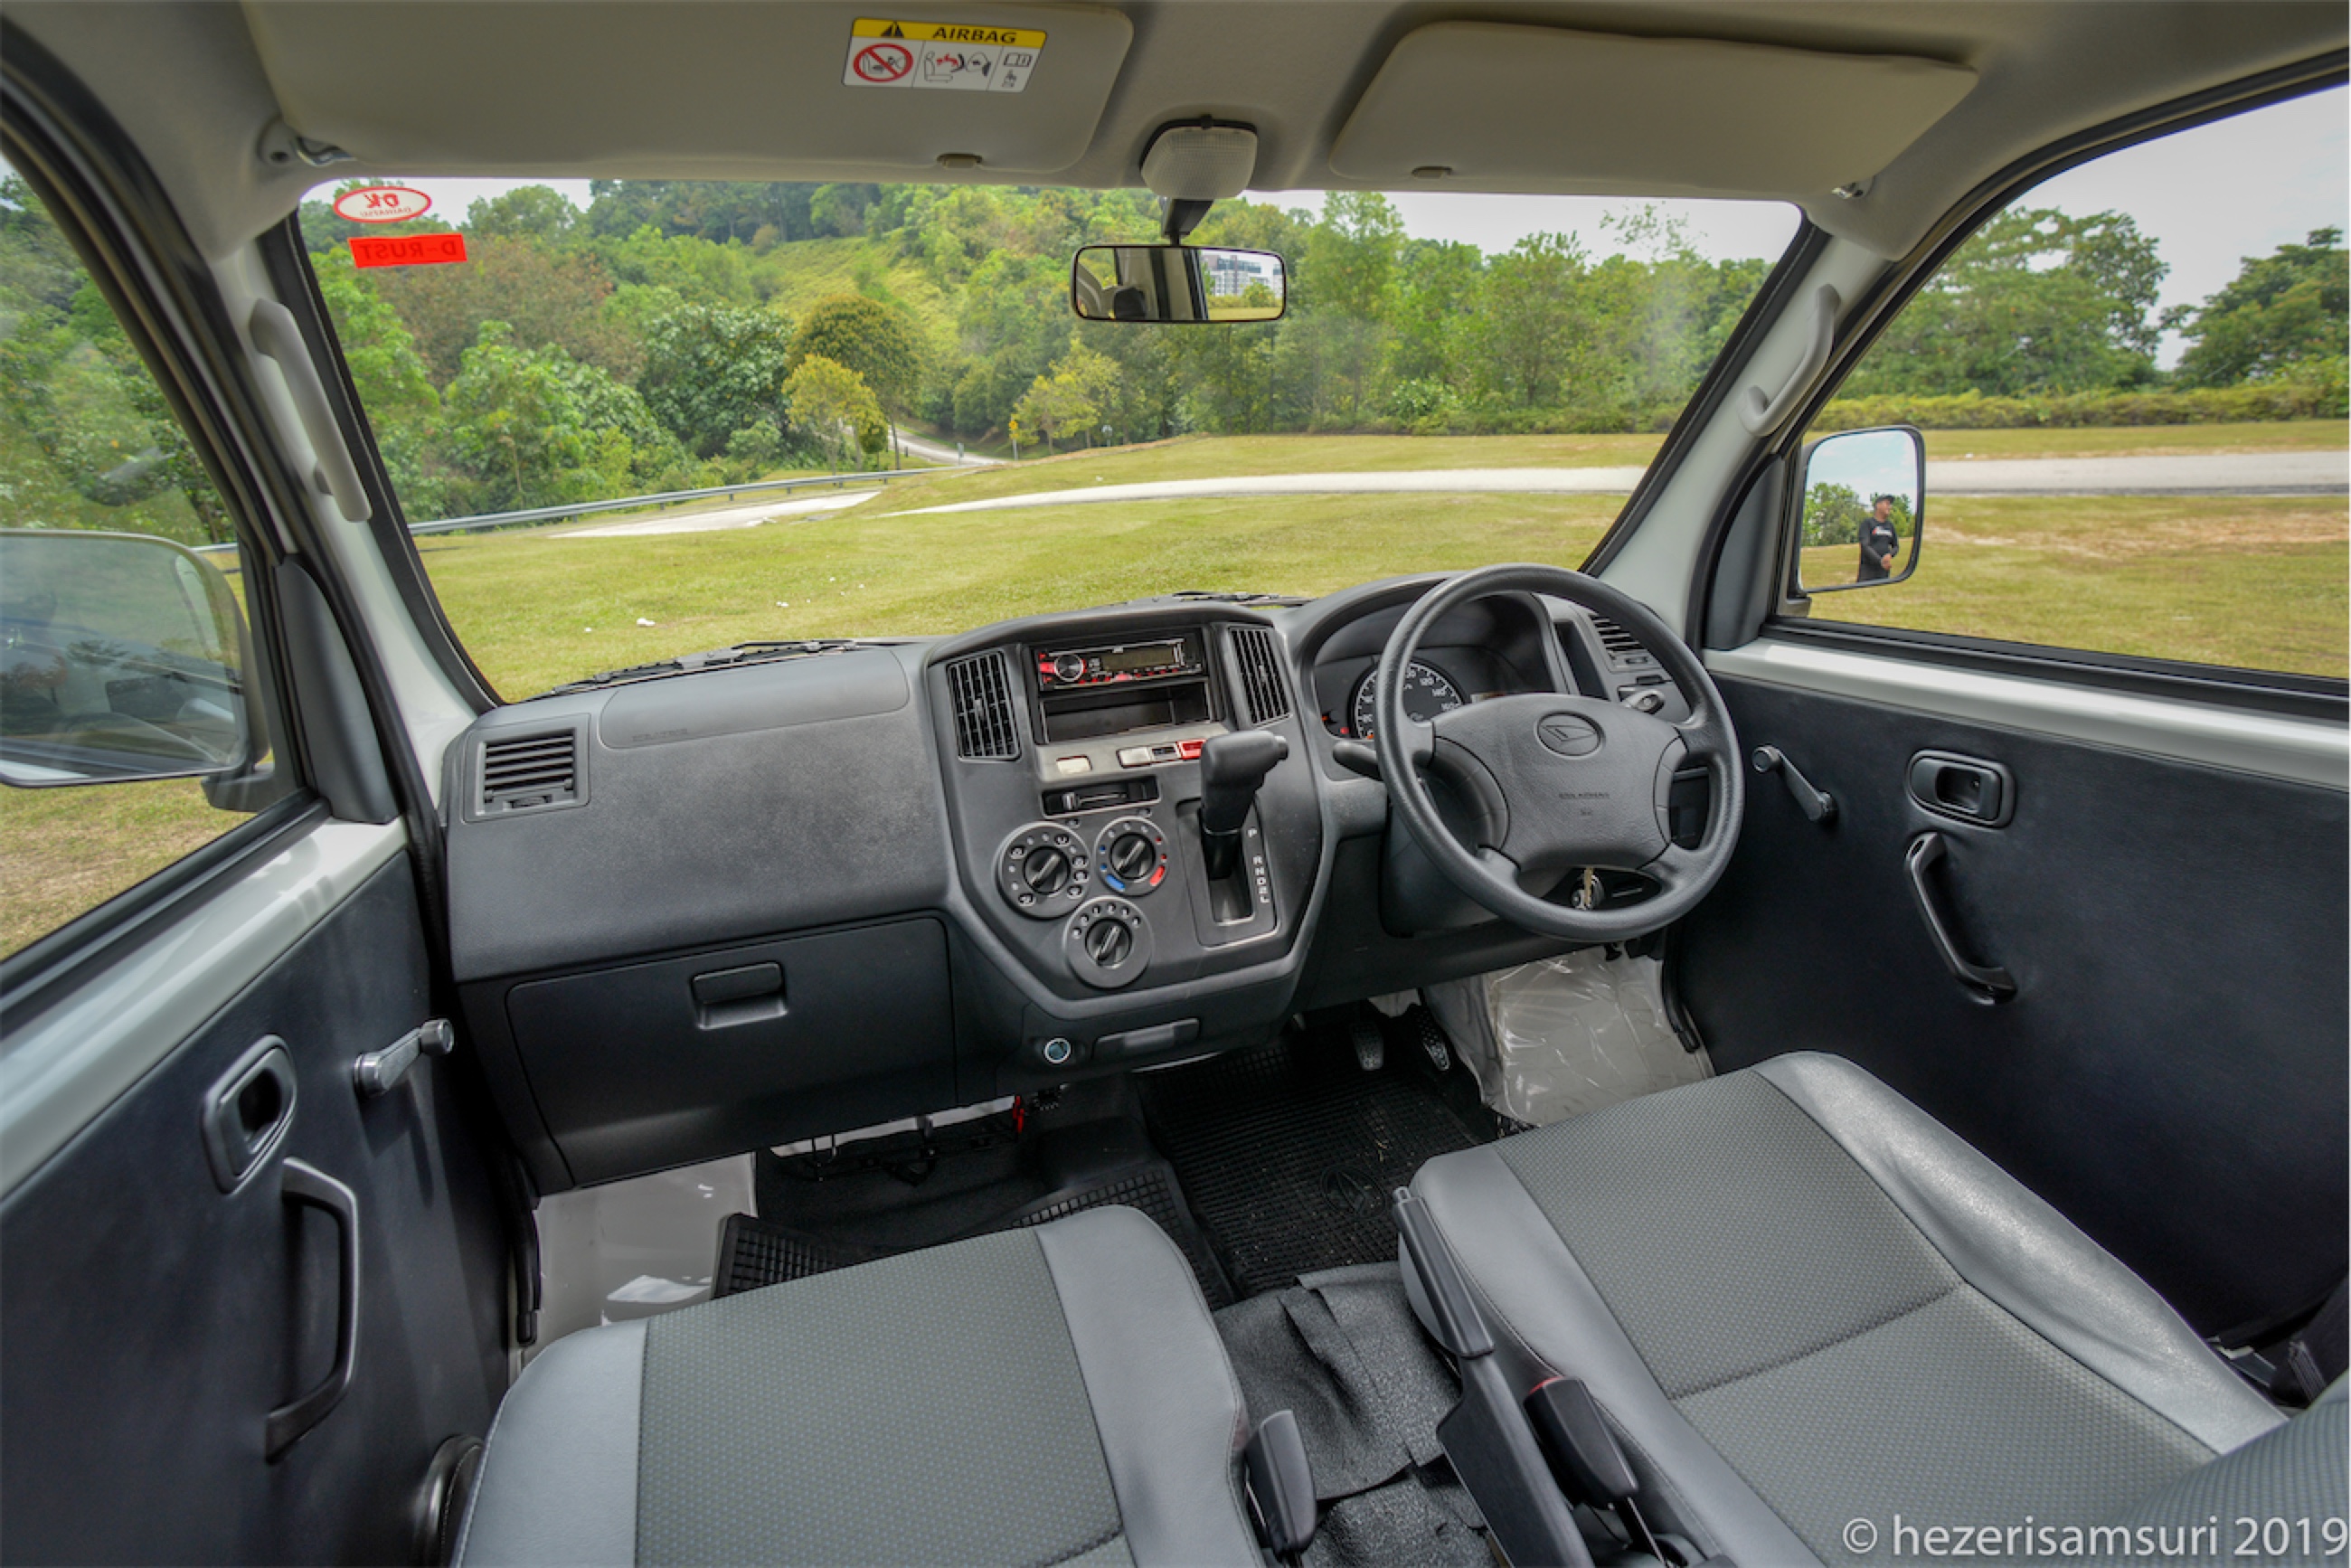 Pandu Uji: Daihatsu Gran Max Auto: 2 tempat duduk, pacuan 